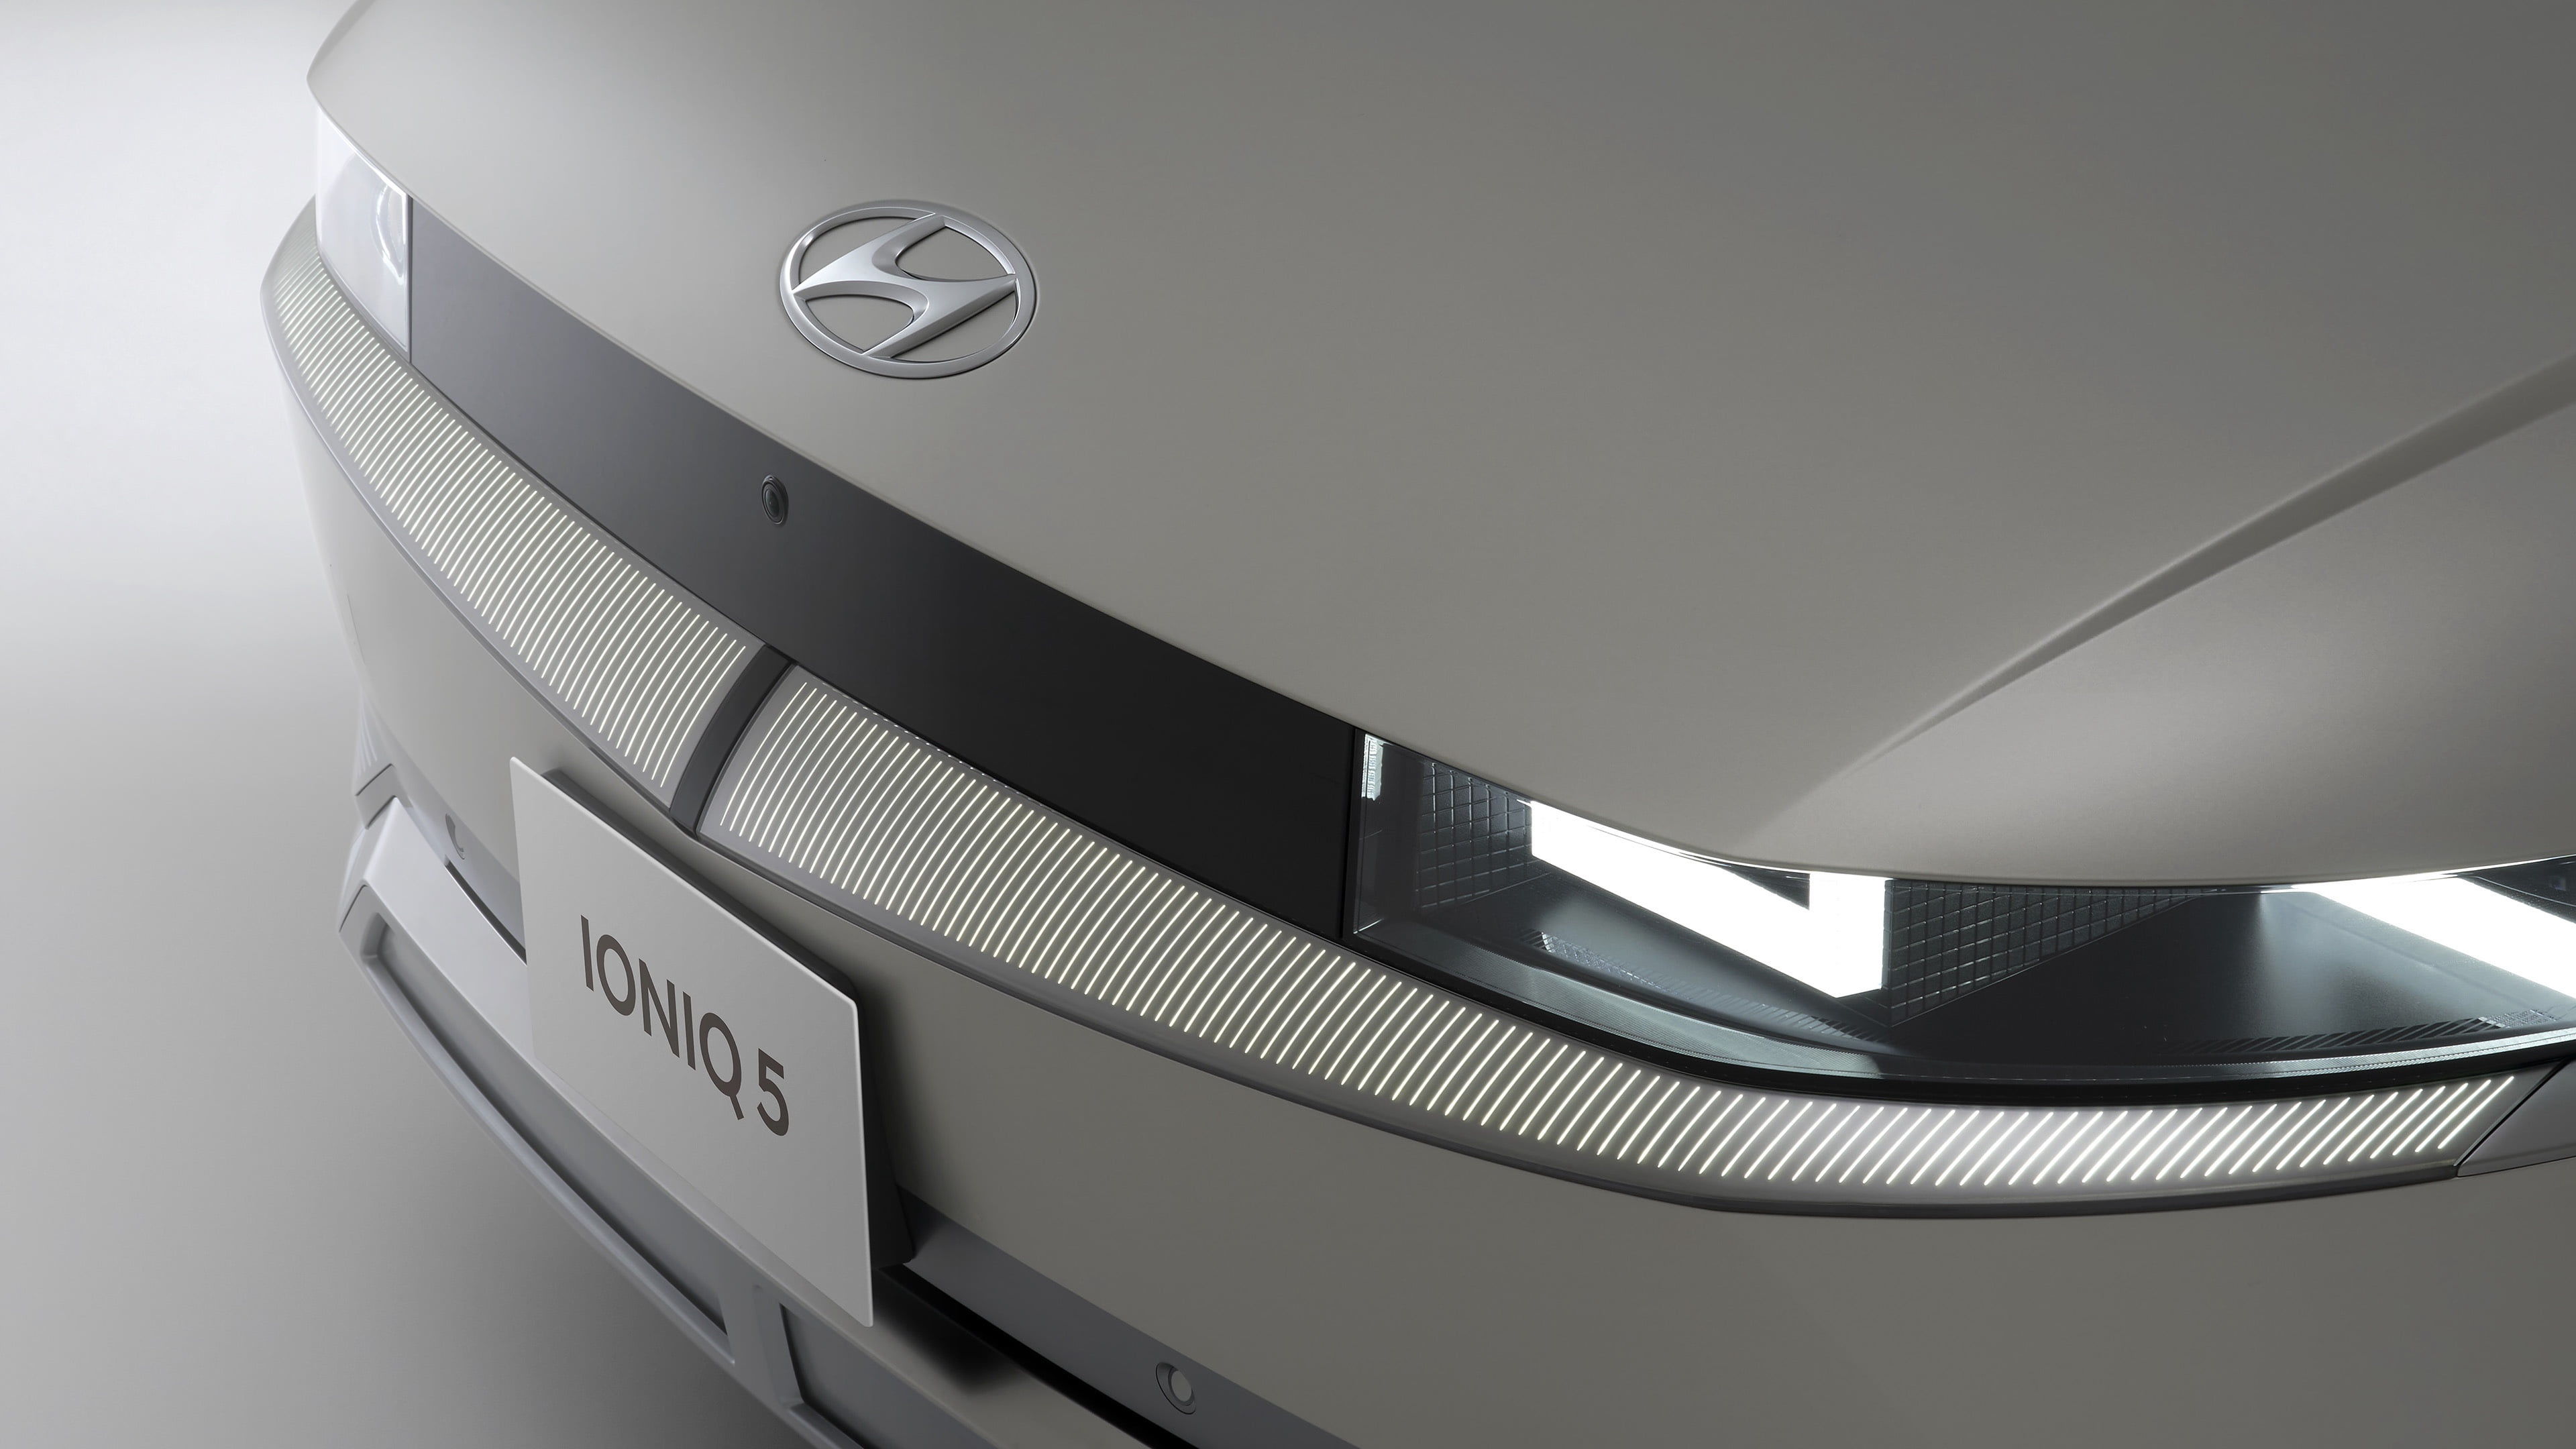 IONIQ 5 (アイオニック 5) 電気自動車 EV パラメトリックピクセル - Hyundai Mobility Japan (ヒョンデモビリティジャパン)